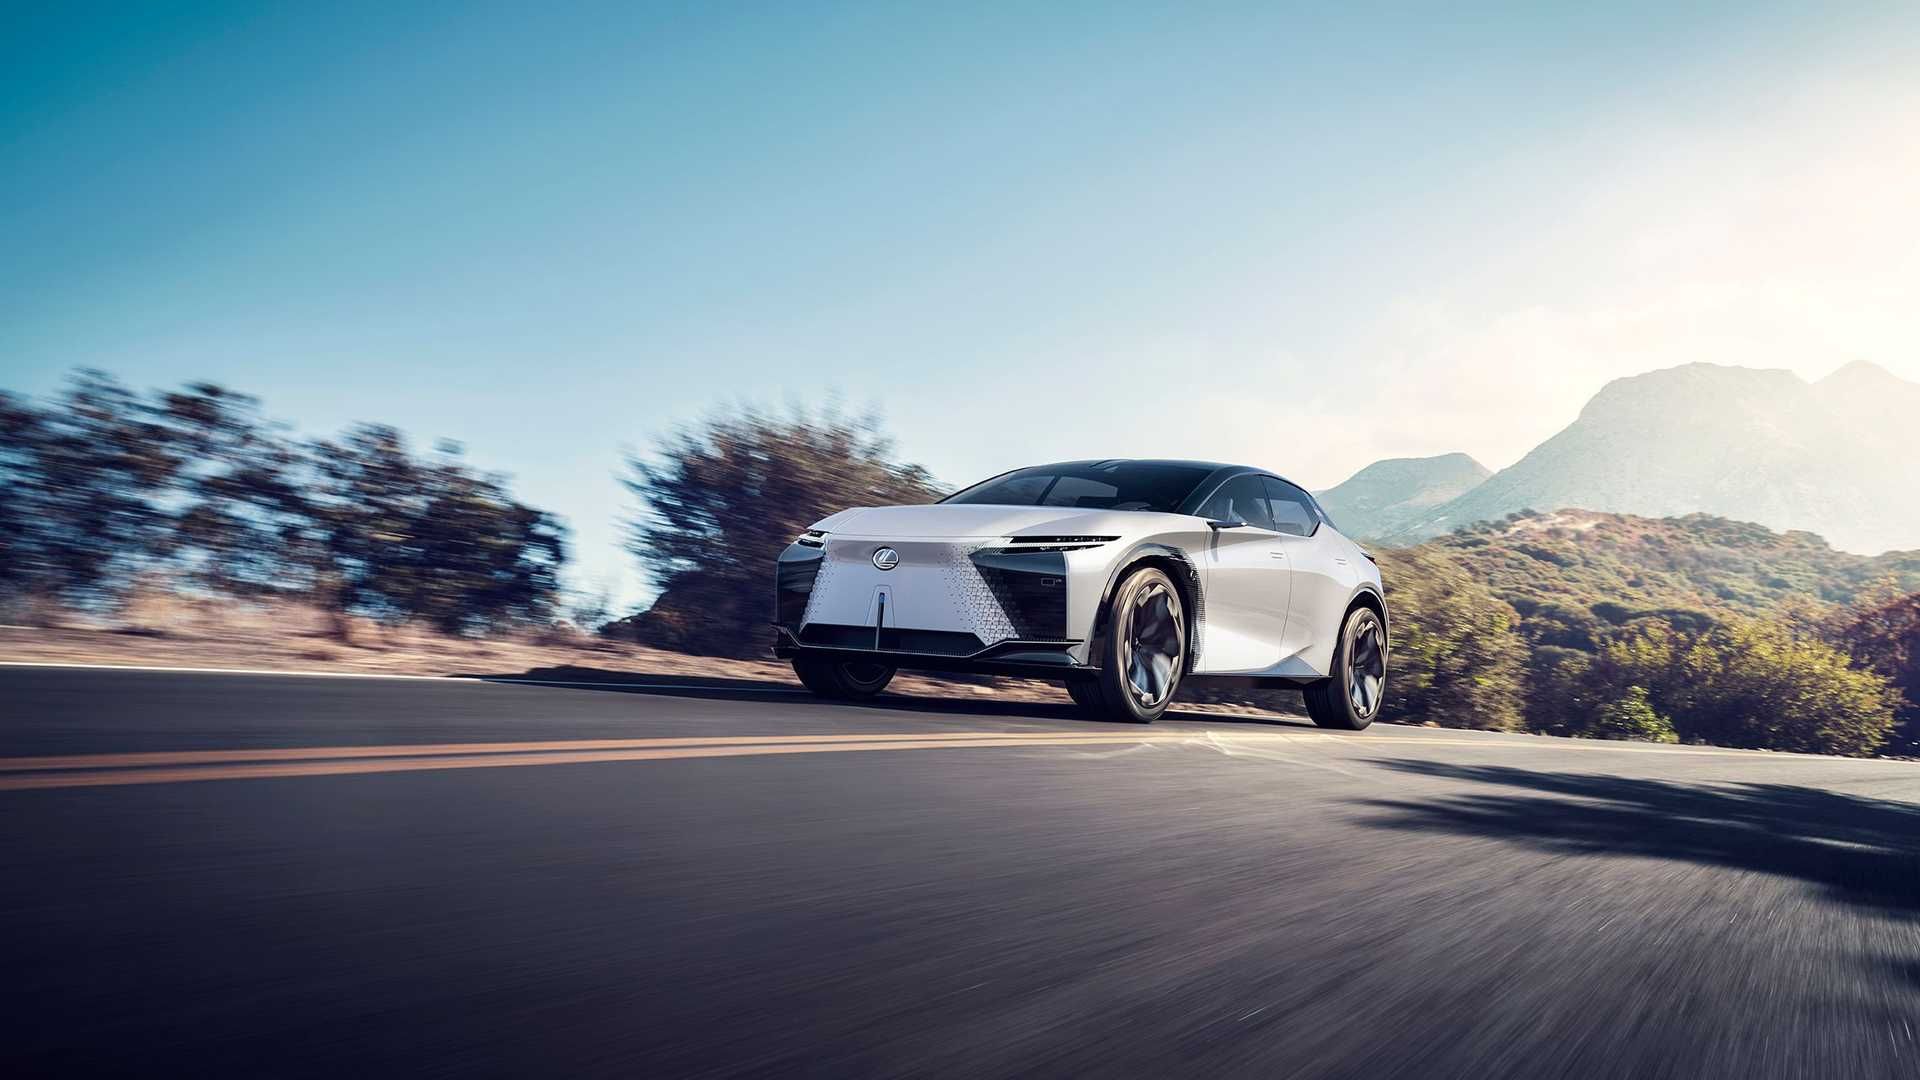 خودروی مفهومی و برقی لکسوس / Lexus LF-Z Electrified Concept EV سفید رنگ در جاده